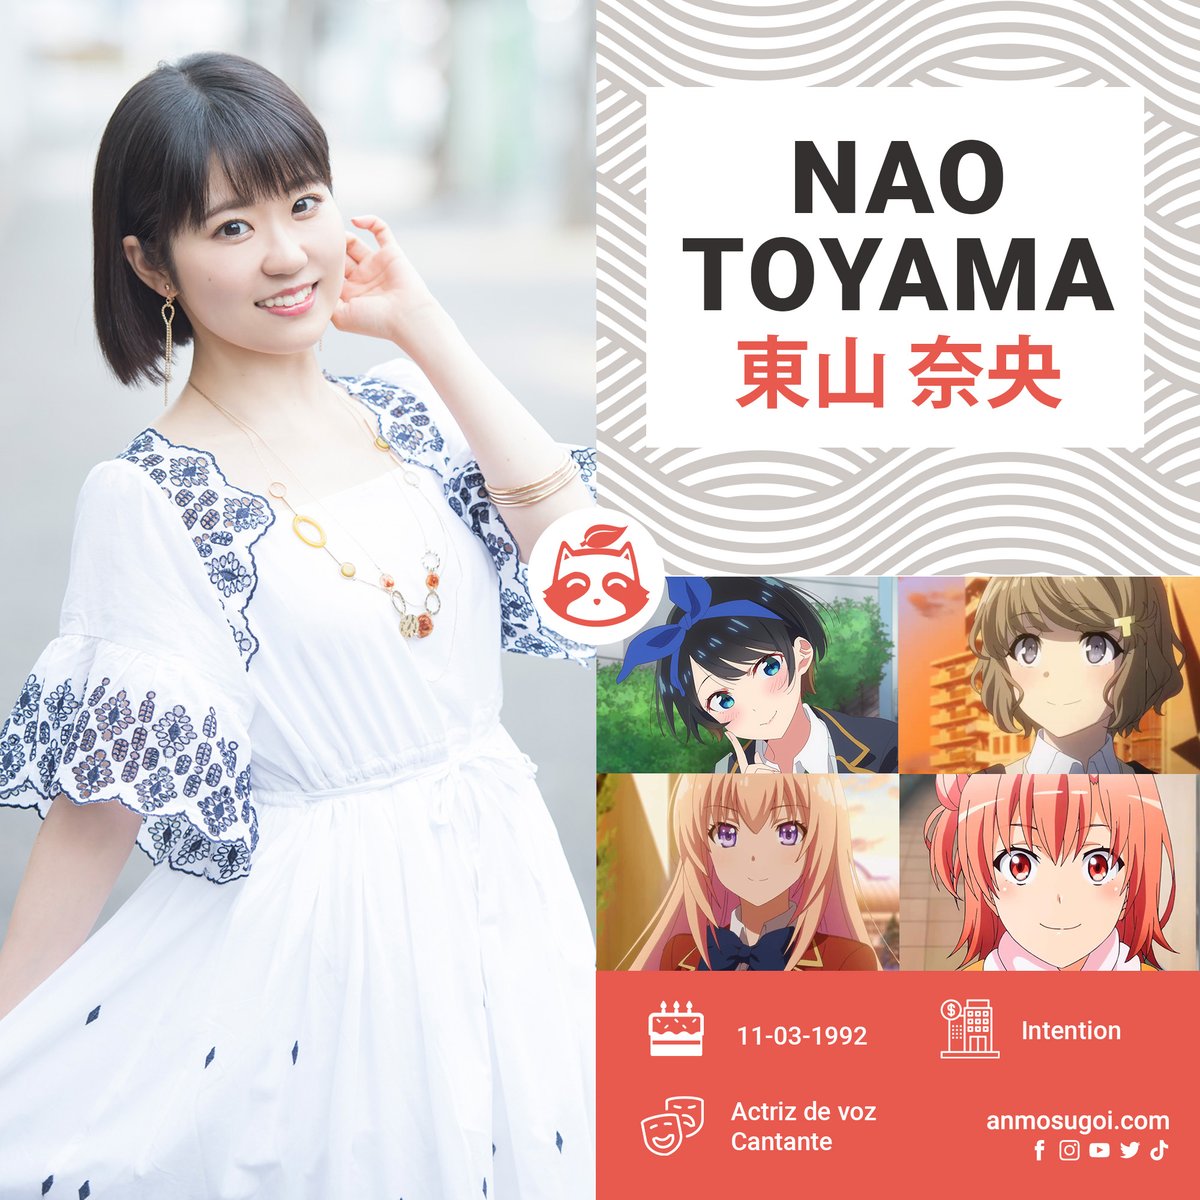 Hoy está de cumpleaños la seiyuu NAO TOYAMA reconocida por interpretar a personajes como Ruka Sarashina, Tomoe Koga, Honami Ichinose y Yui Yuigahama entre algunas.

¡Feliz cumpleaños! 🎂🎈🎀🎁
#NaoToyama #東山奈央